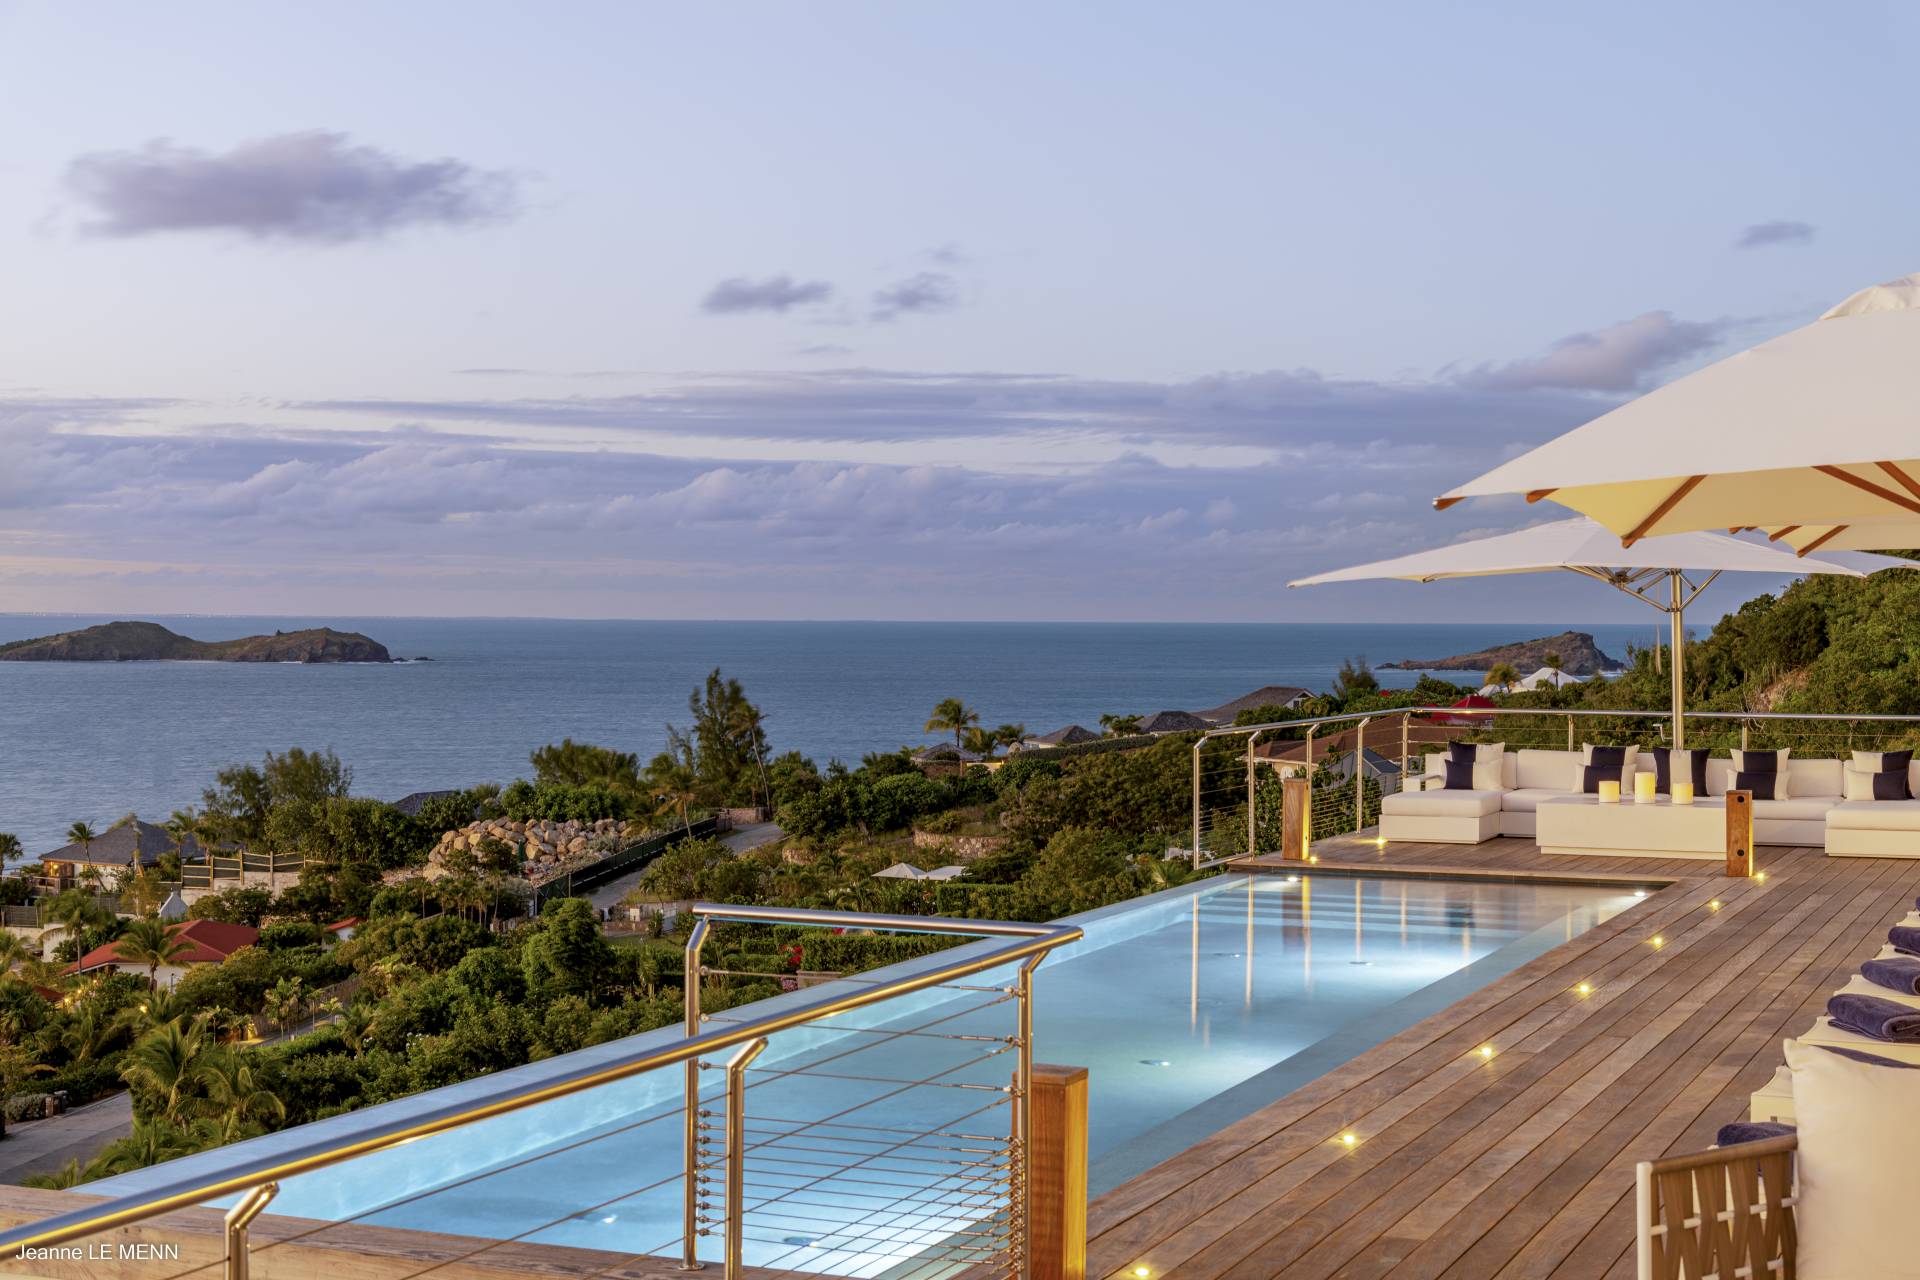 Villa Cap Azur Terrace